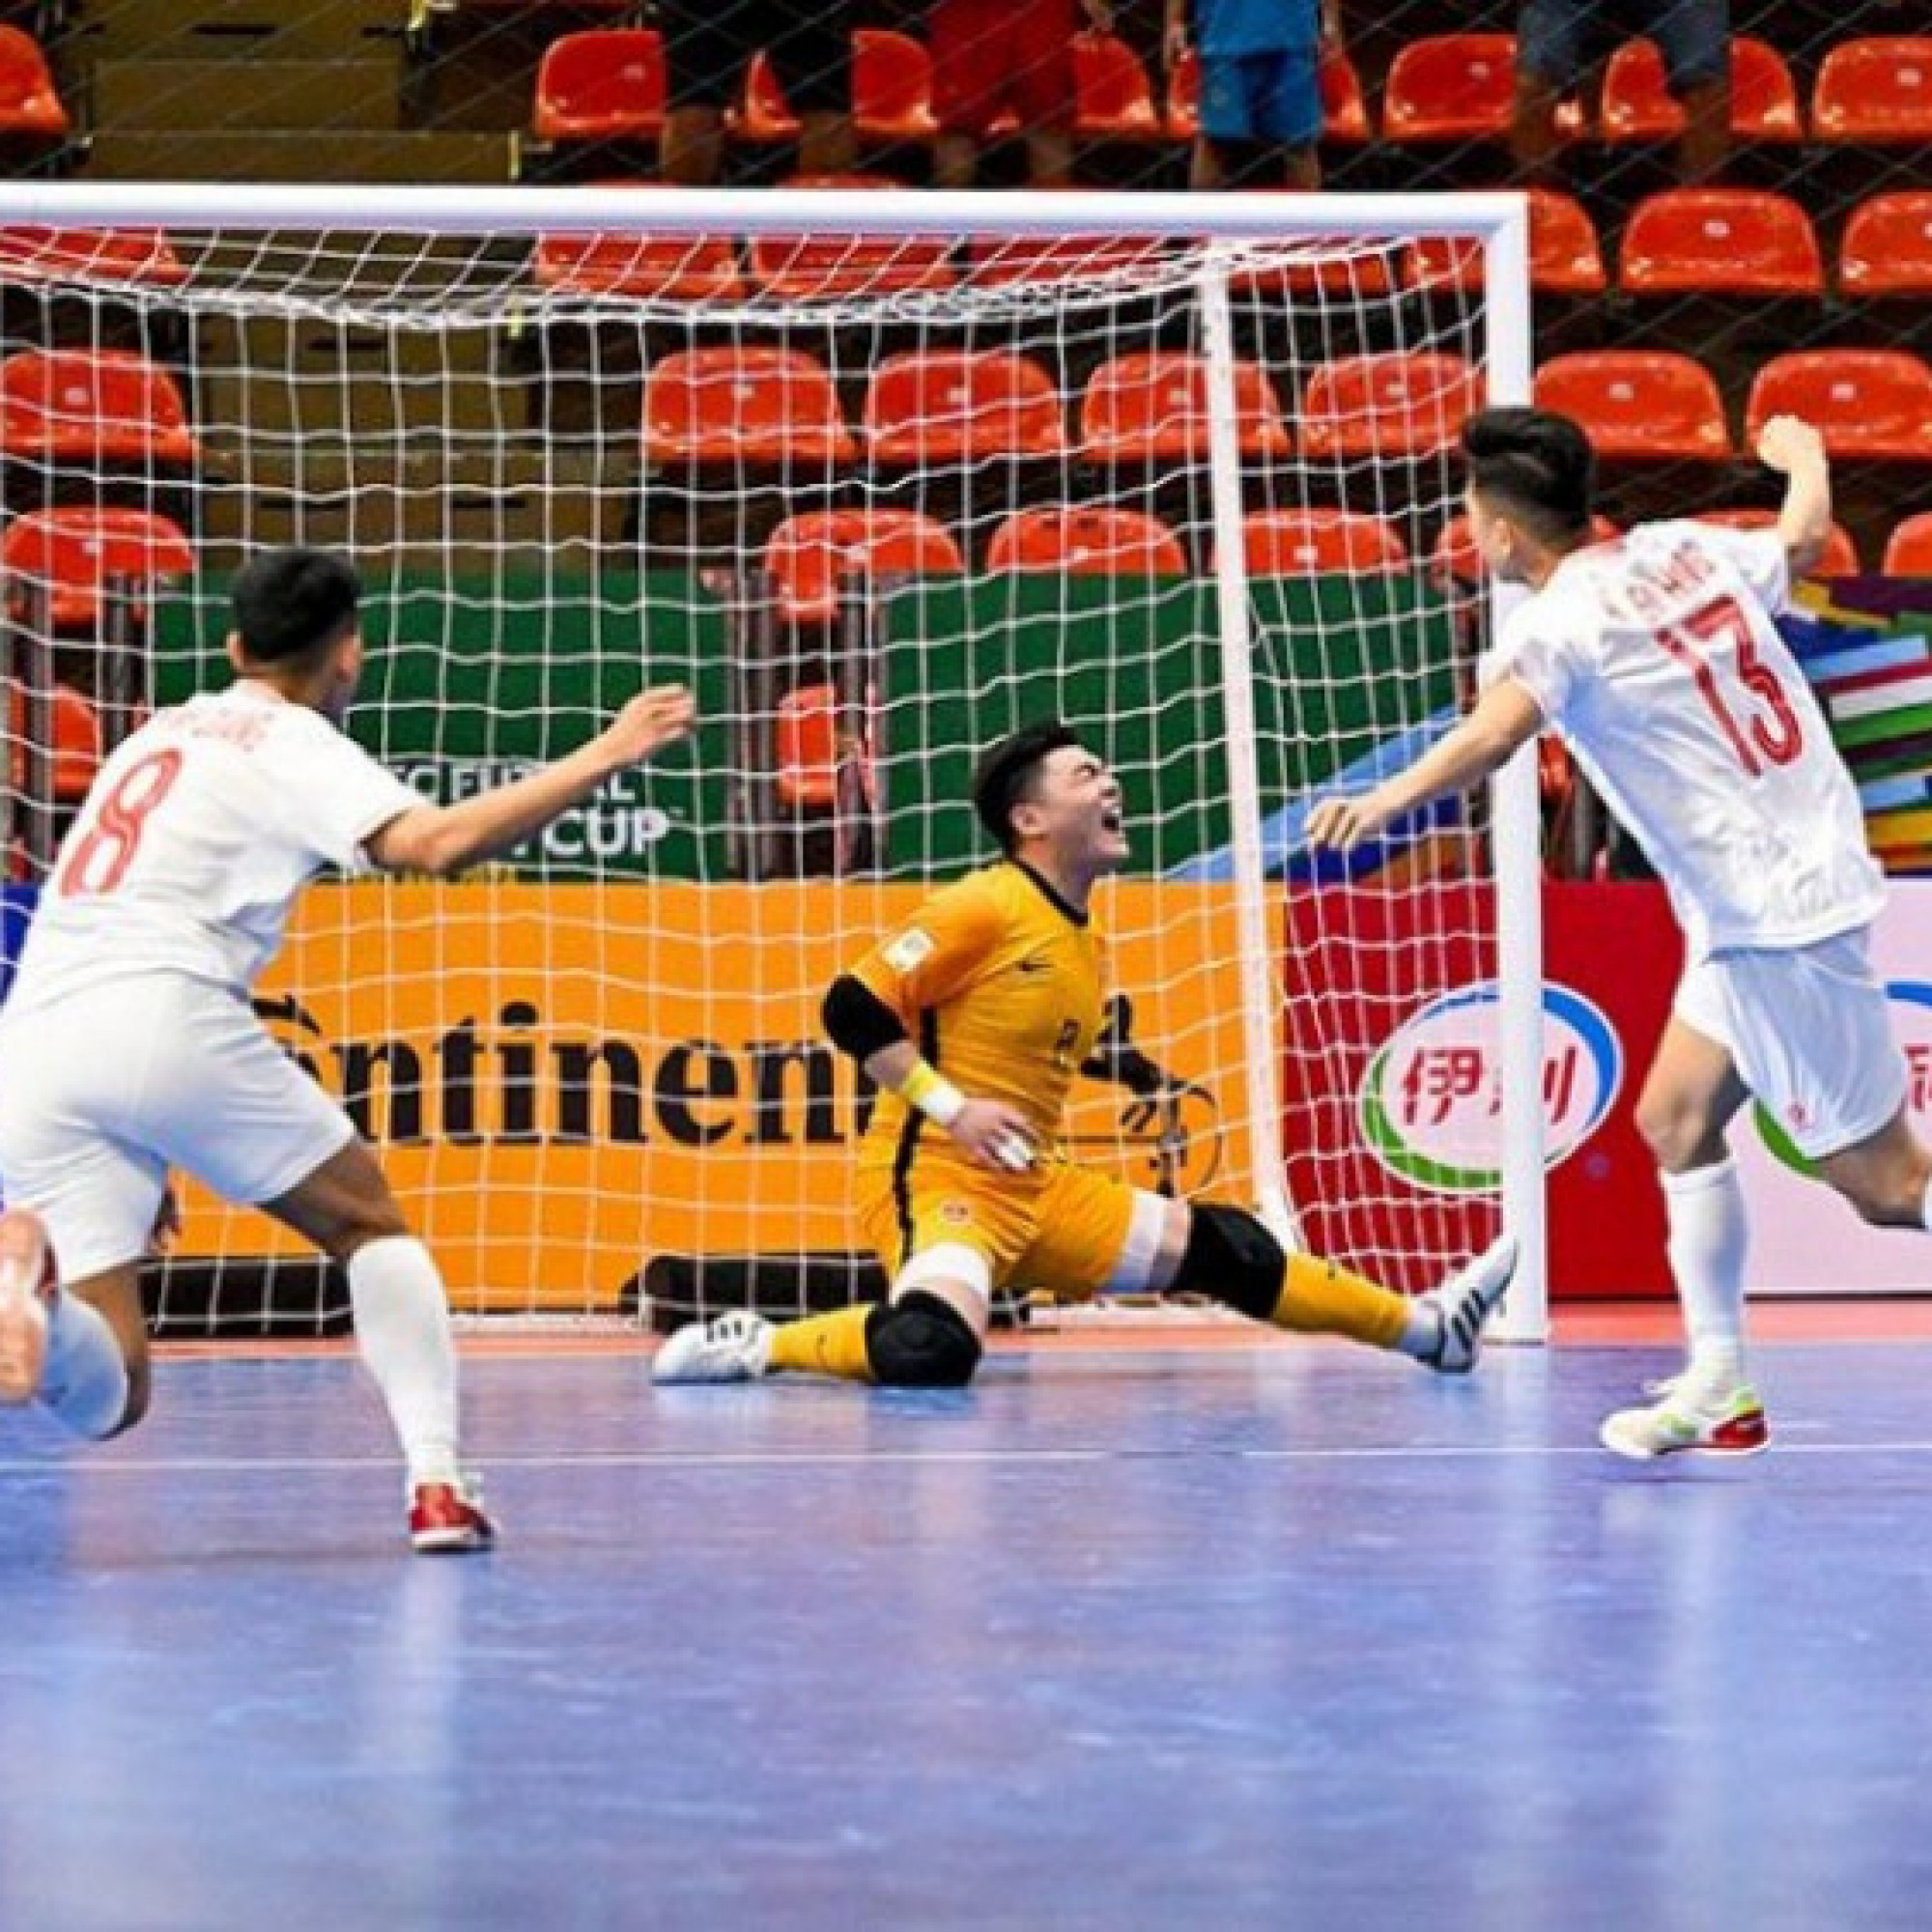  - Kết quả futsal ĐT Việt Nam - Trung Quốc: Chiến thắng nhọc nhằn, hú hồn xà ngang (Futsal châu Á)